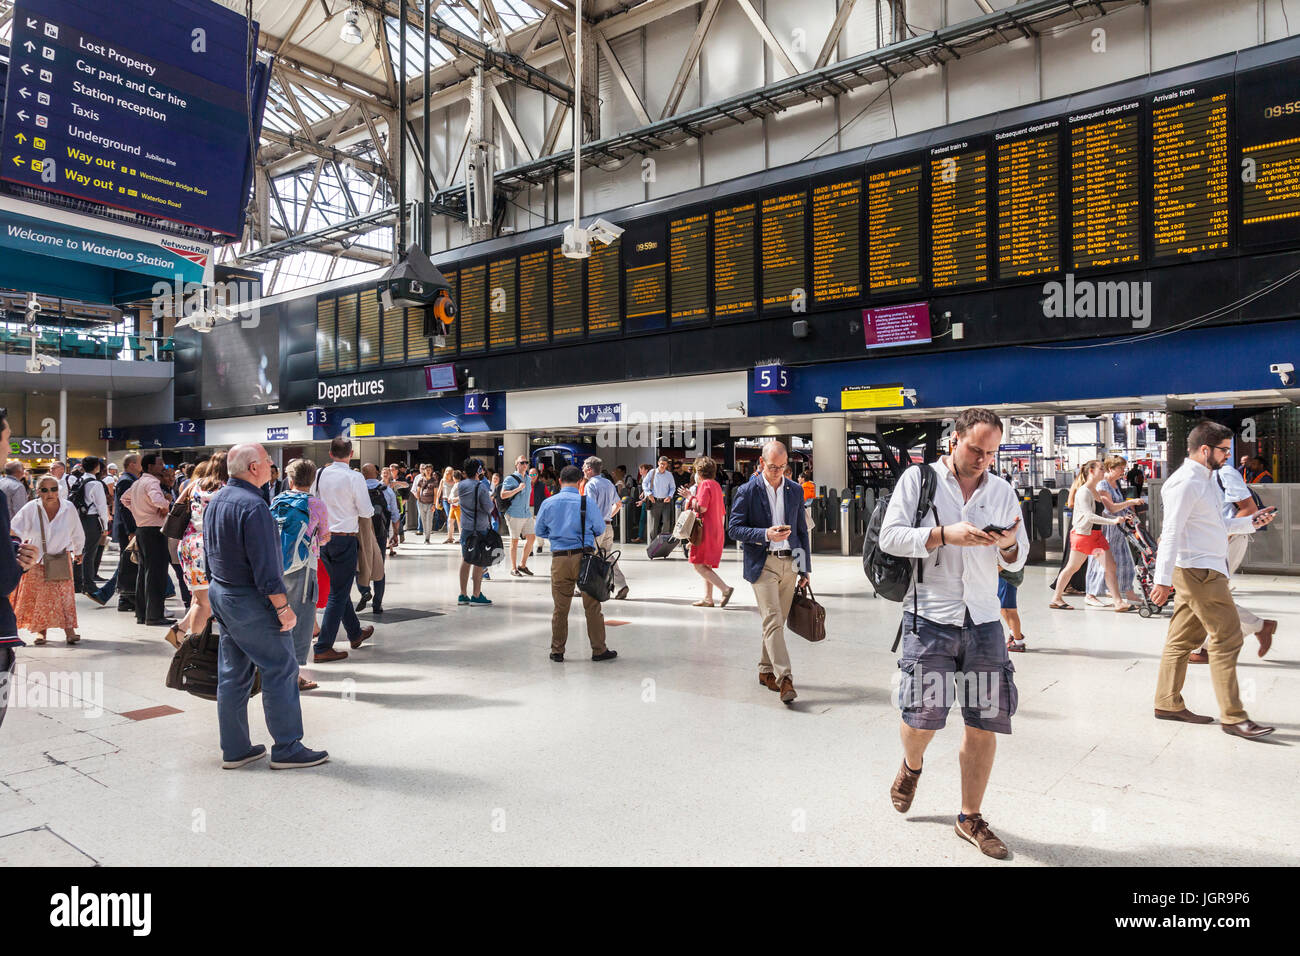 Les passagers, concourse, arrivées et départs et des panneaux dans la gare de Waterloo, un grand terminal de chemin de fer à Lambeth, au centre de Londres. Banque D'Images